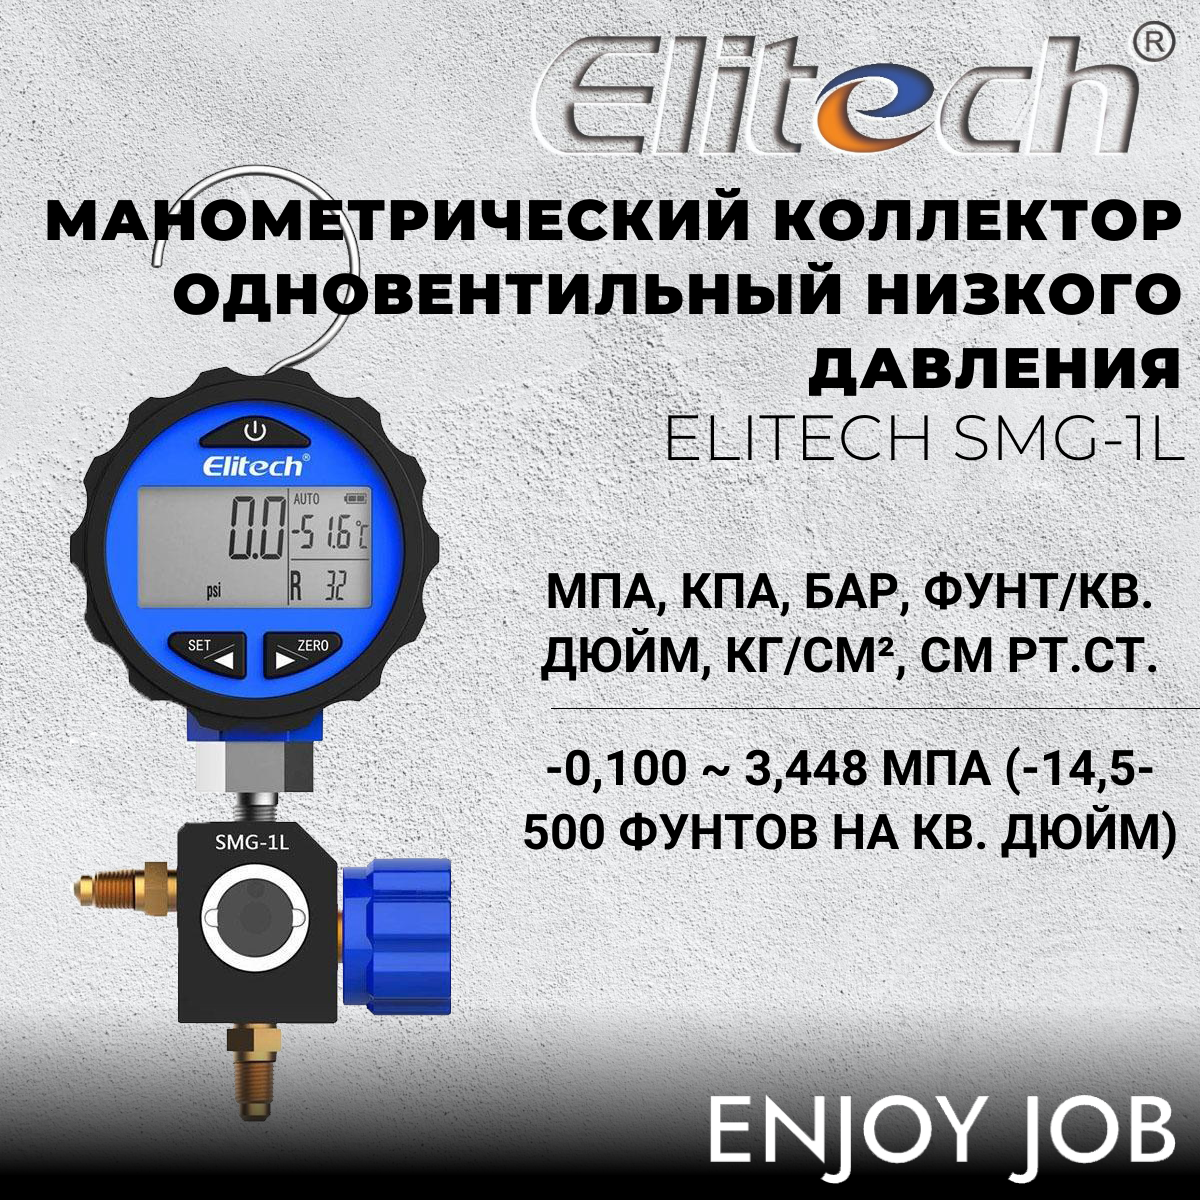 Цифровой манометр низкого давления ELITECH SMG-1L (-14.5-500 psi)